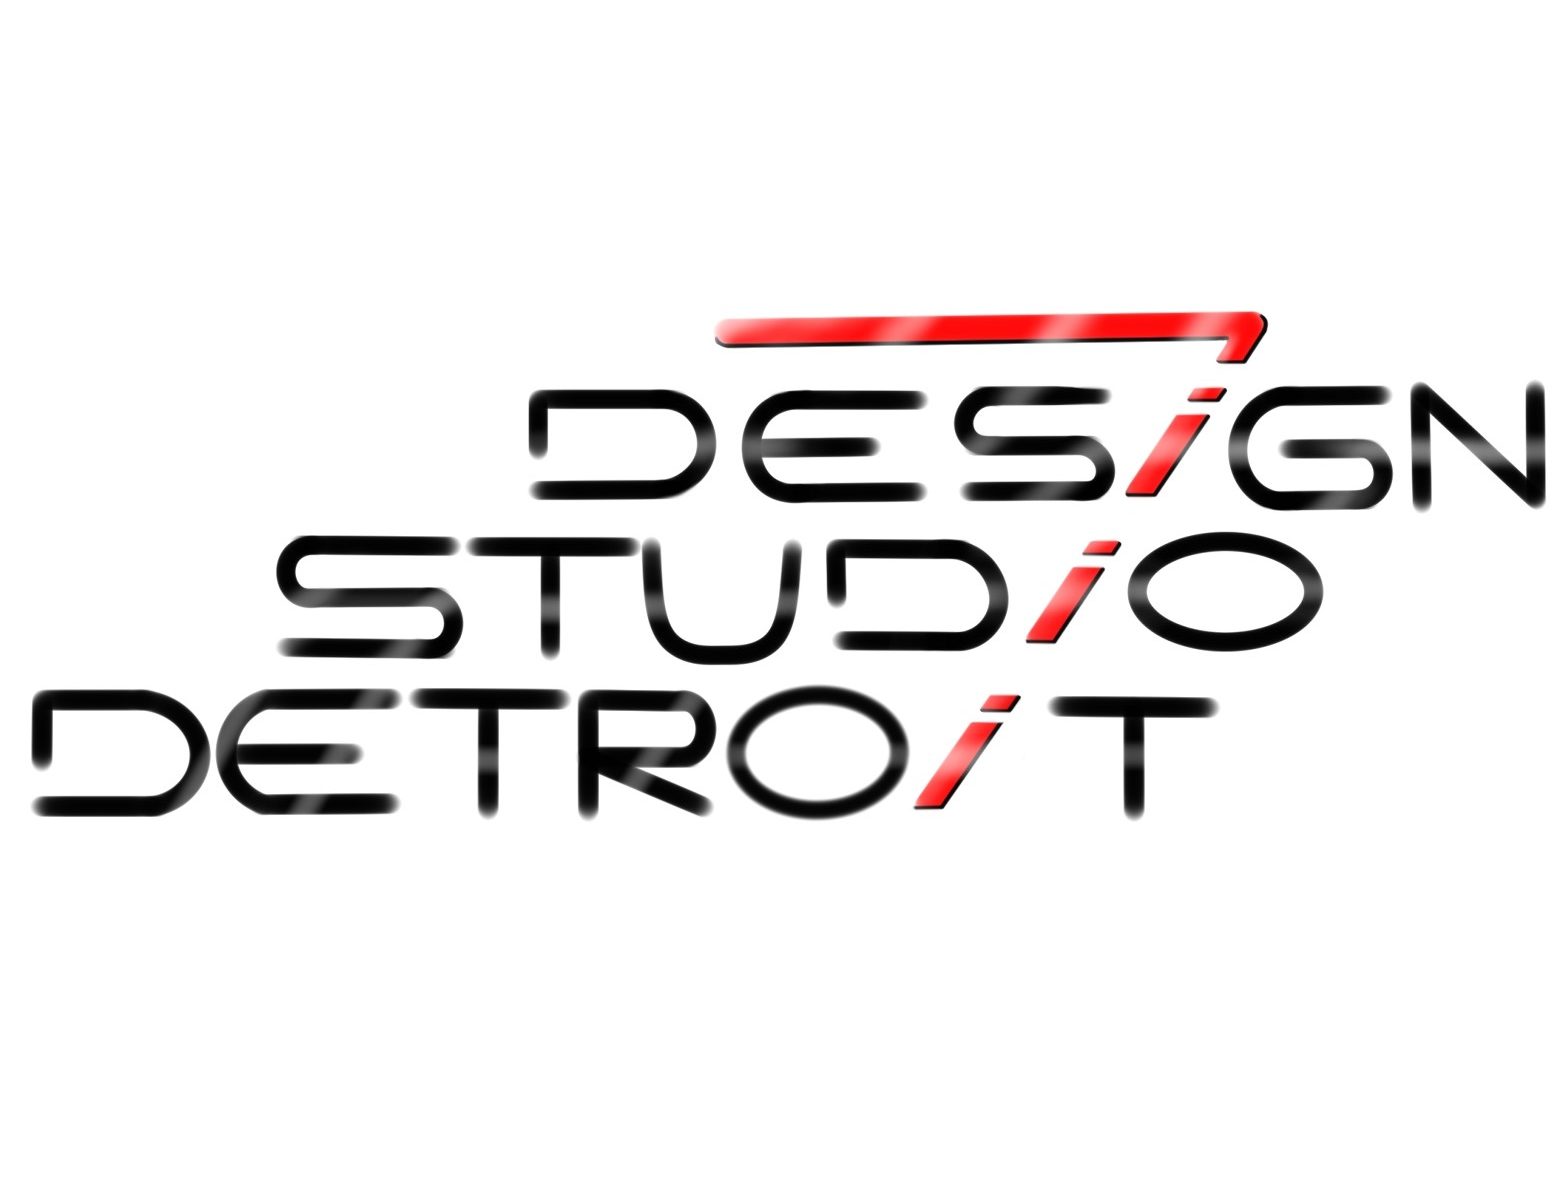 Design Studio 7 Detroit